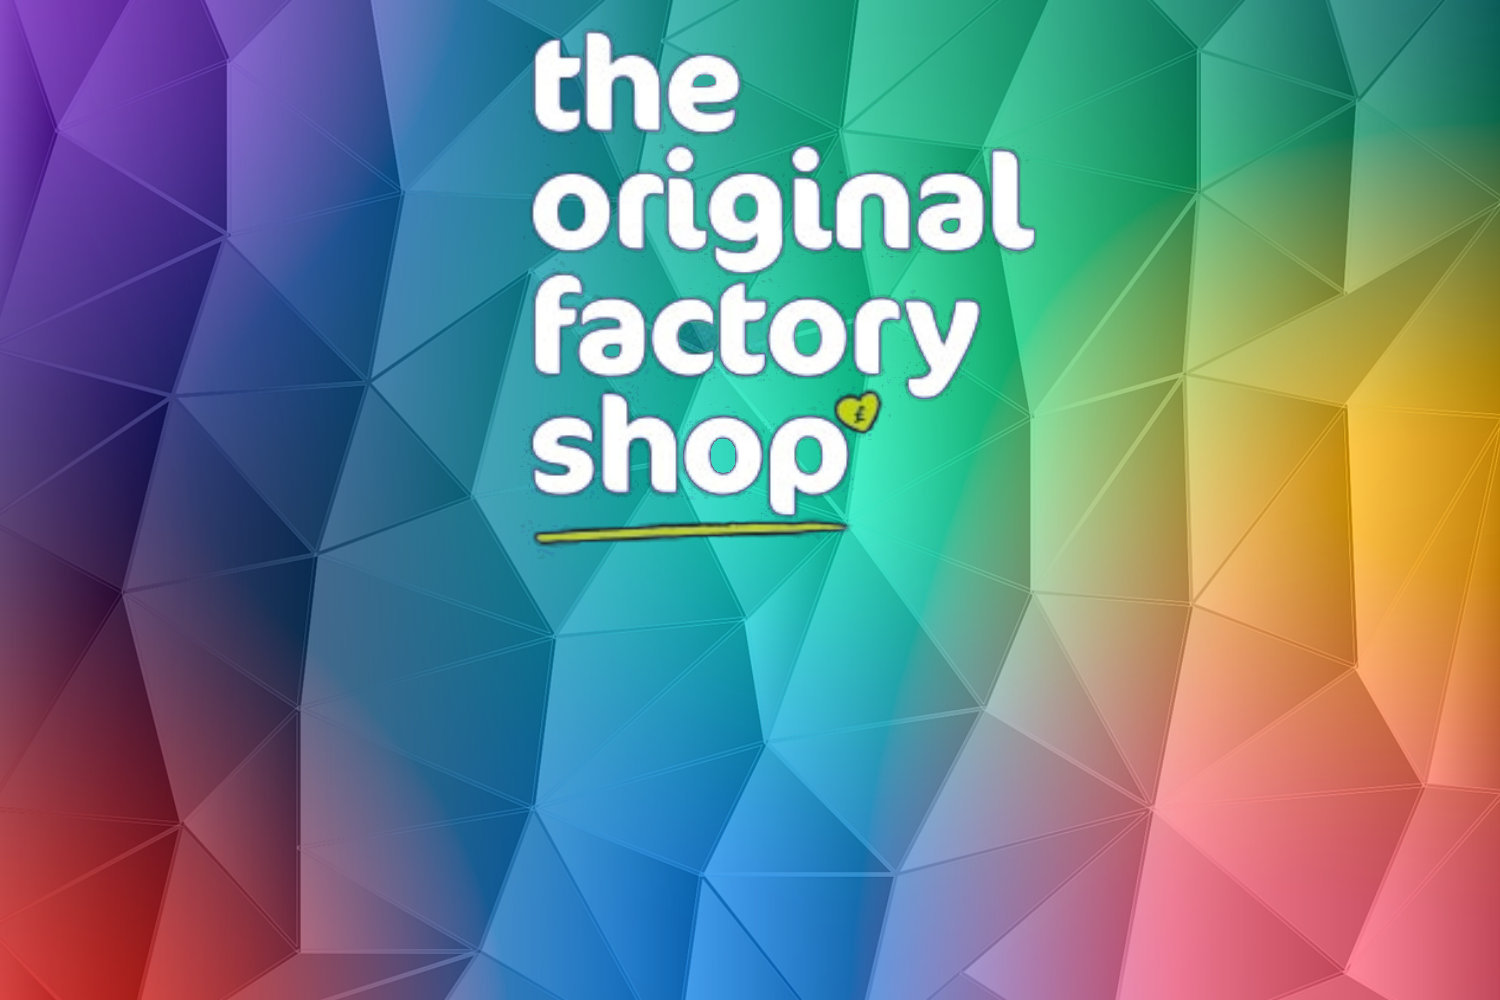 The original factory shop